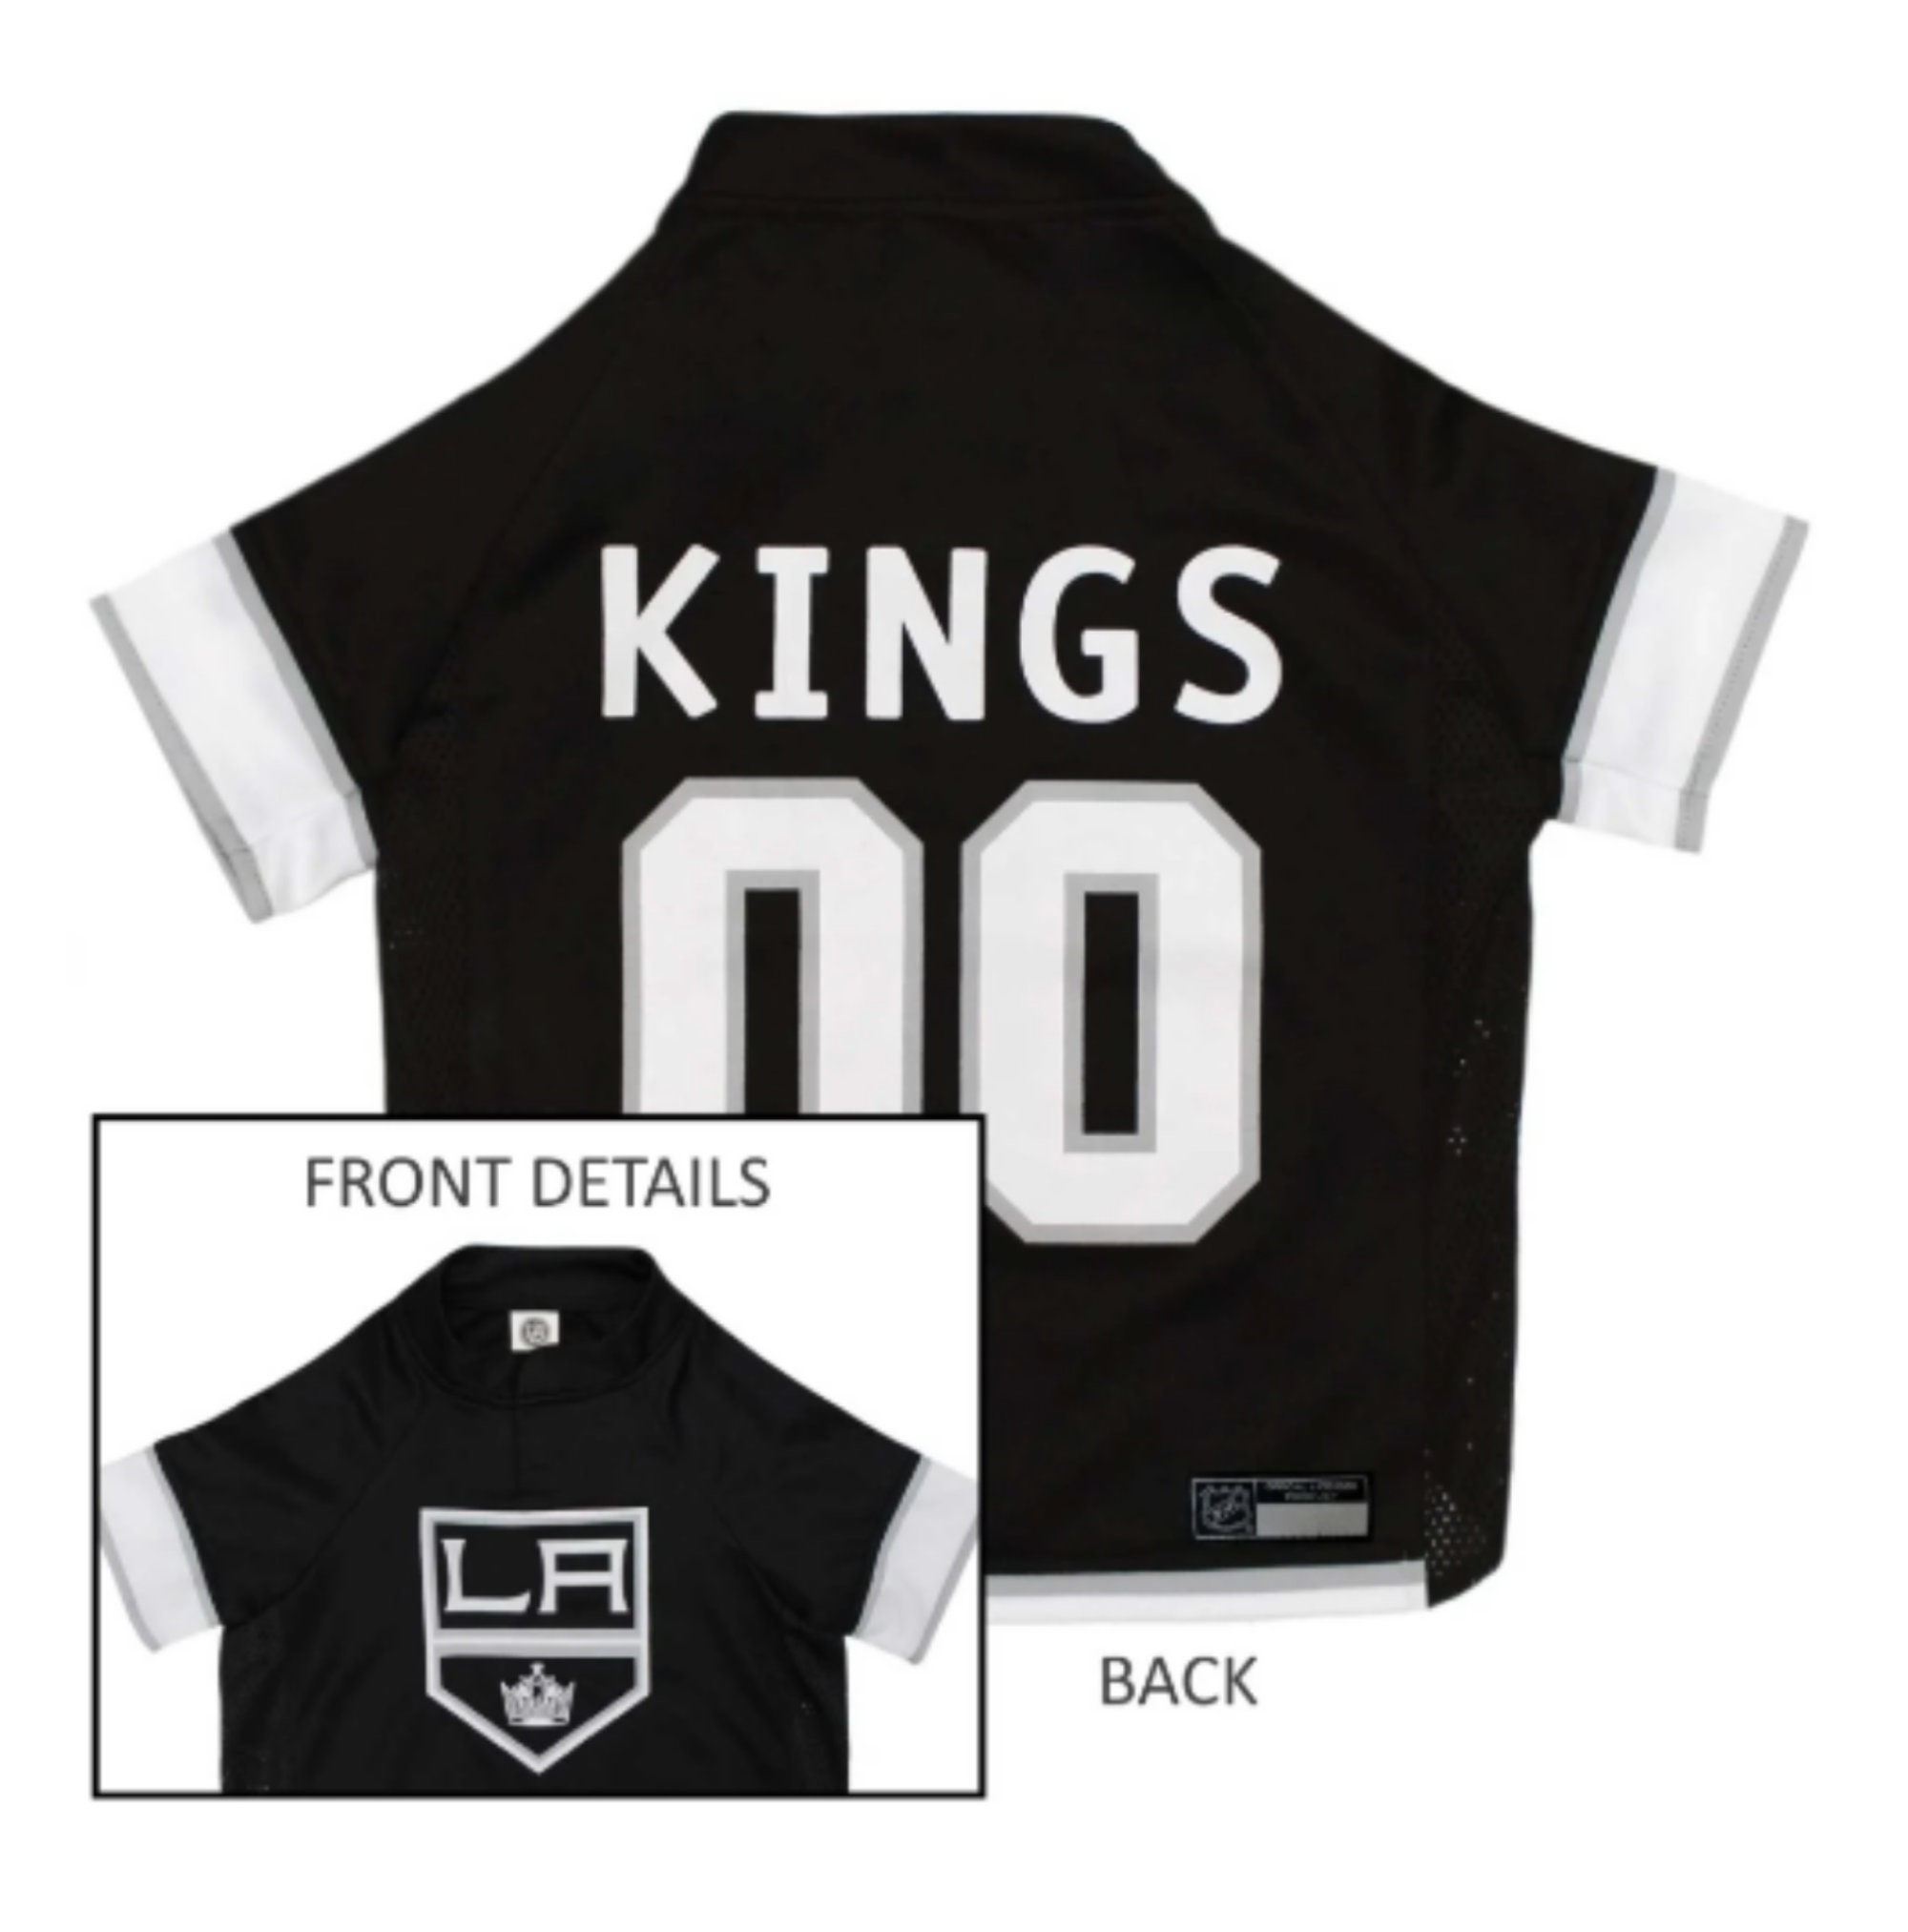 Custom LA Kings Jersey, Personalized La Kings Jersey for sale - Wairaiders